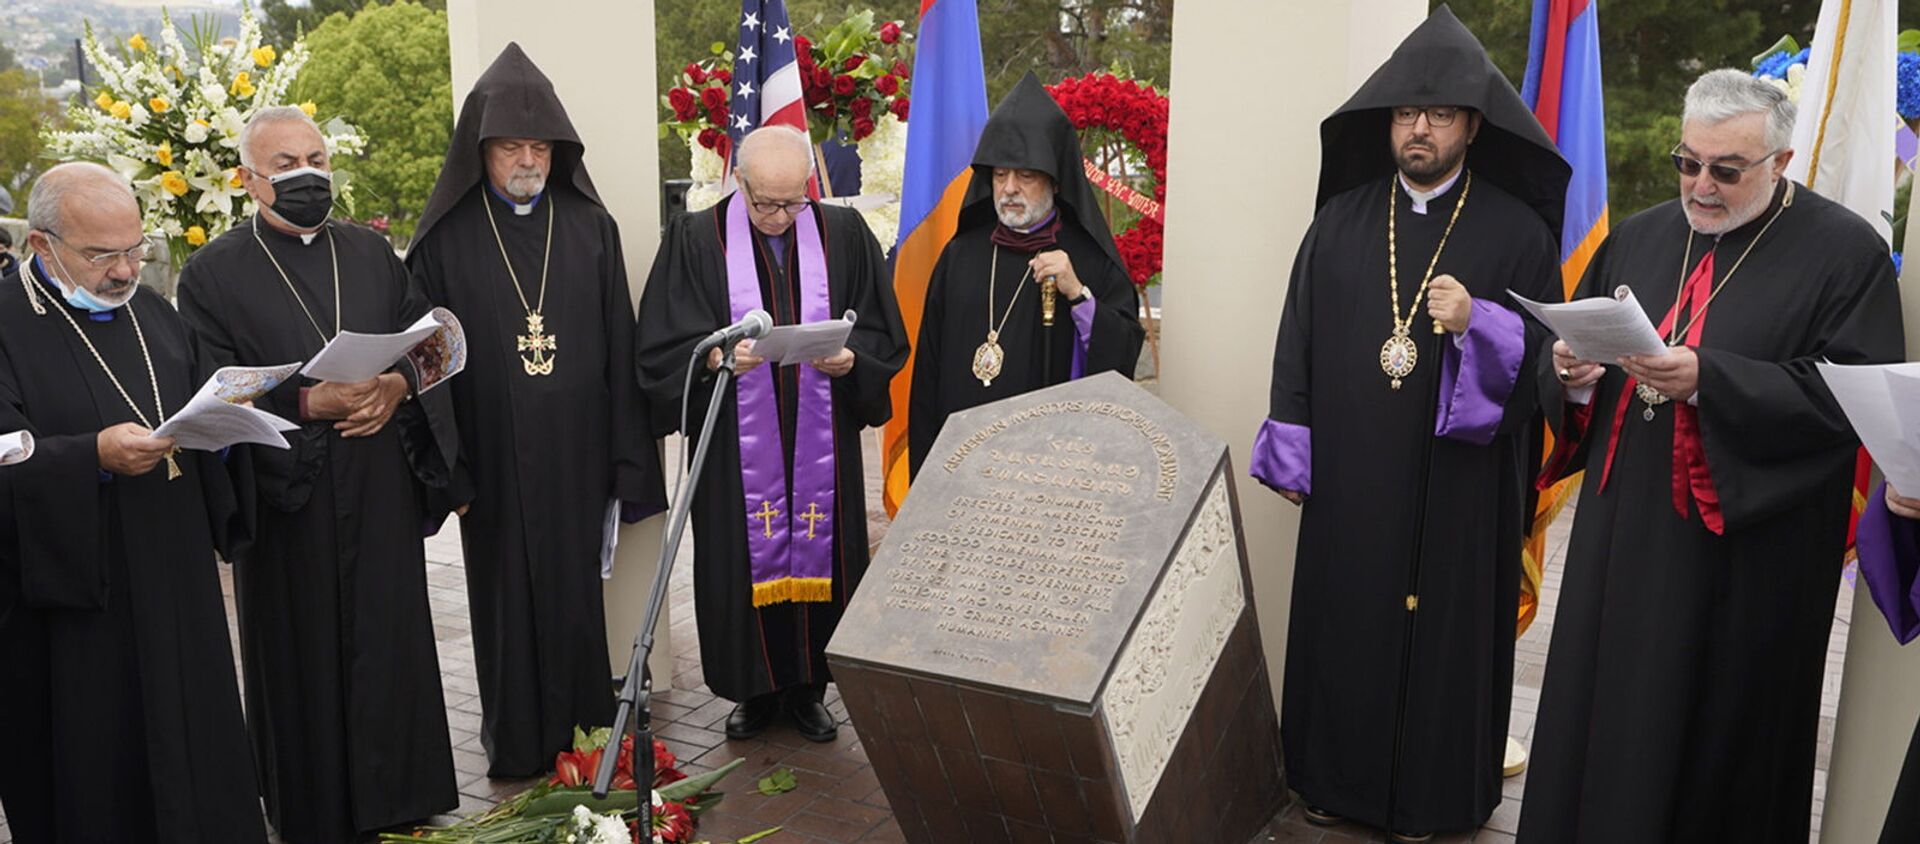 Религиозные лидеры поют на церемонии памяти жертв Геноцида армян у монумента Геноцида армян в Монтебелло (24 апреля 2021). Калифорния - Sputnik Армения, 1920, 25.04.2021